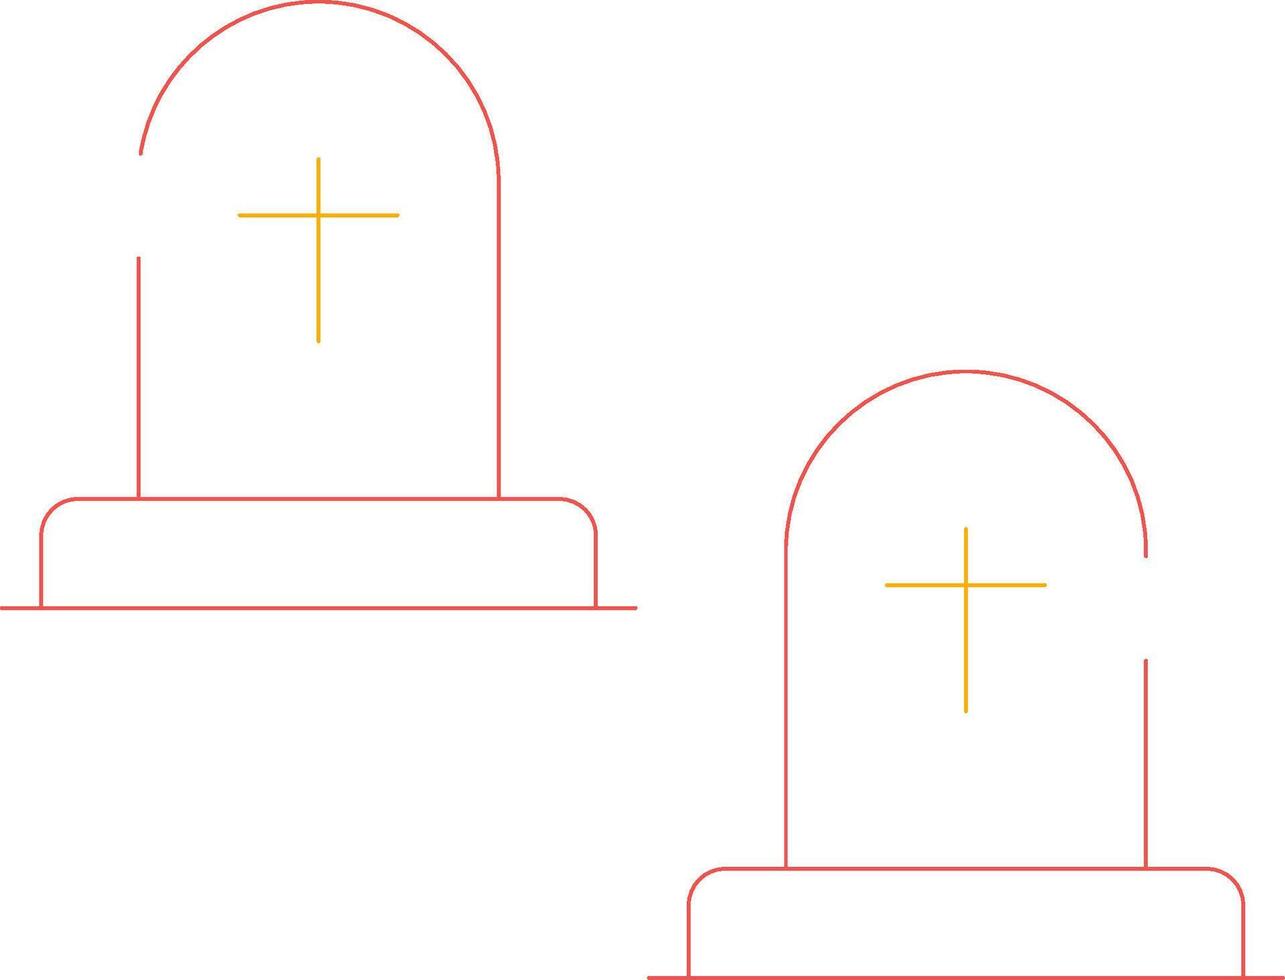 cimitero creativo icona design vettore